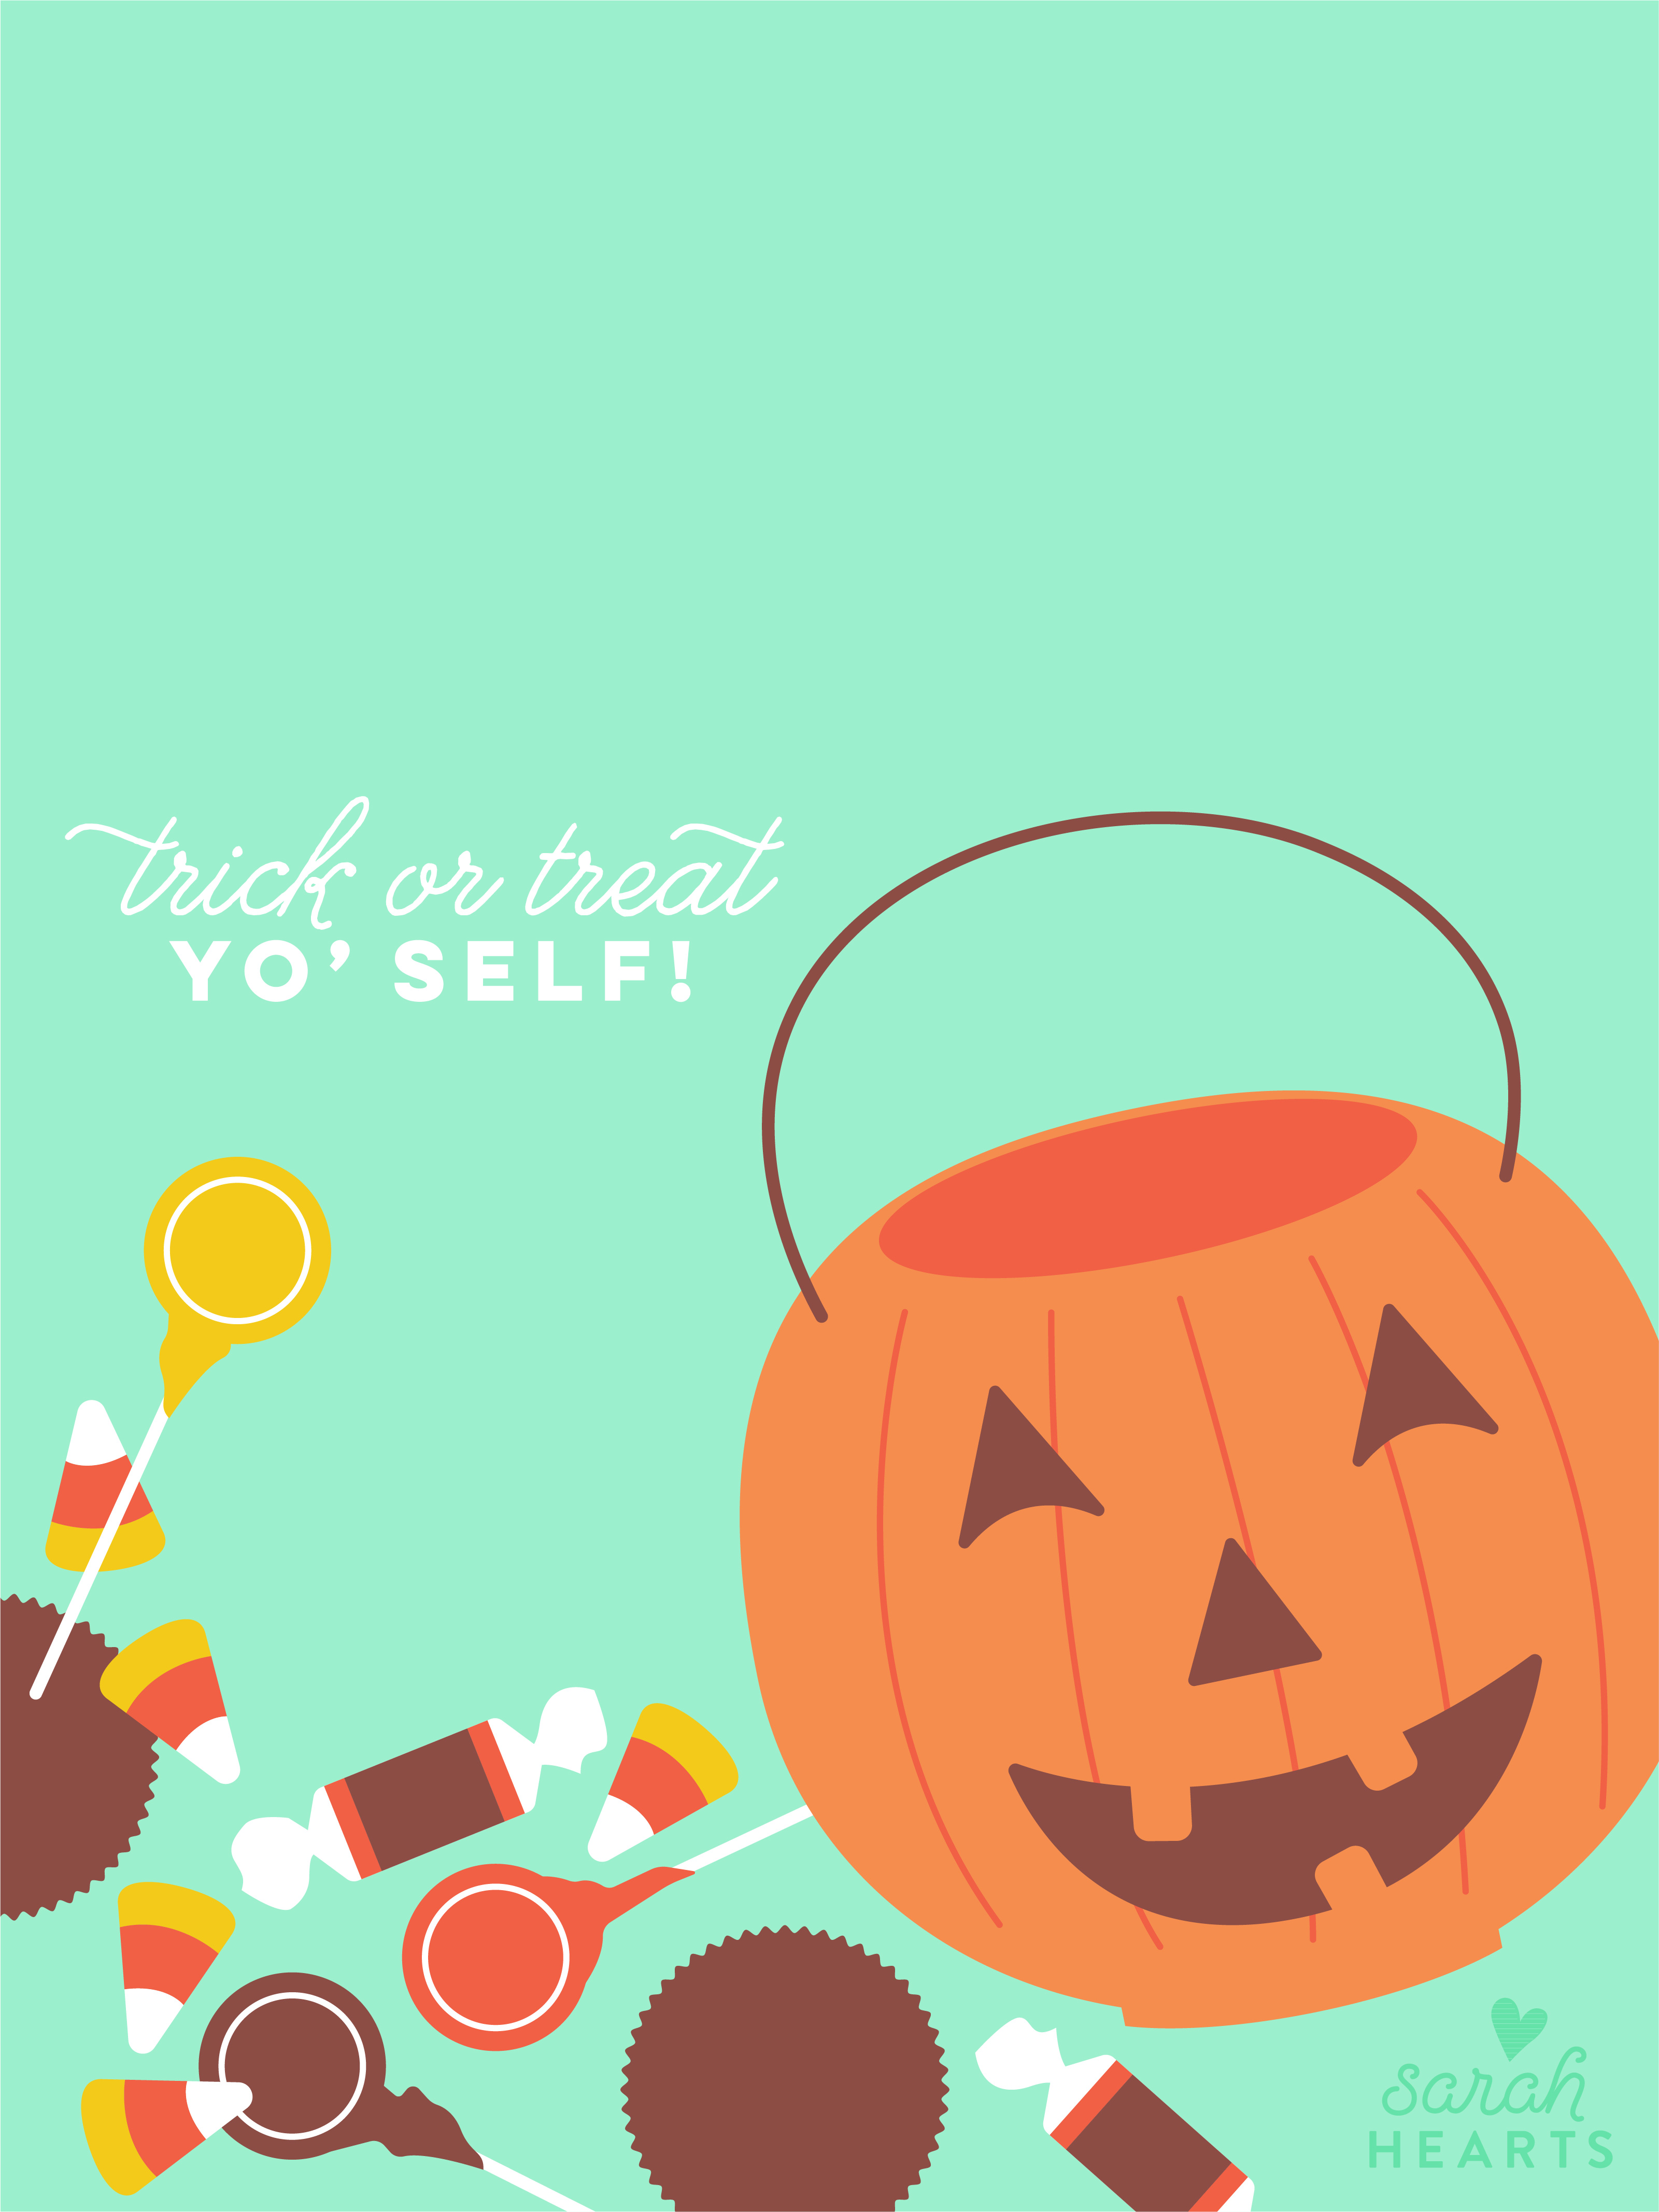 Chào mừng mùa lễ Halloween với lịch 2018 tháng 10 vô cùng đáng yêu từ Sarah Hearts. Bắt đầu từ hình nền kẹo màu sắc trung tính cho đến những nét vẽ đáng yêu. Sẽ là một lựa chọn tuyệt vời cho bạn trong năm nay.